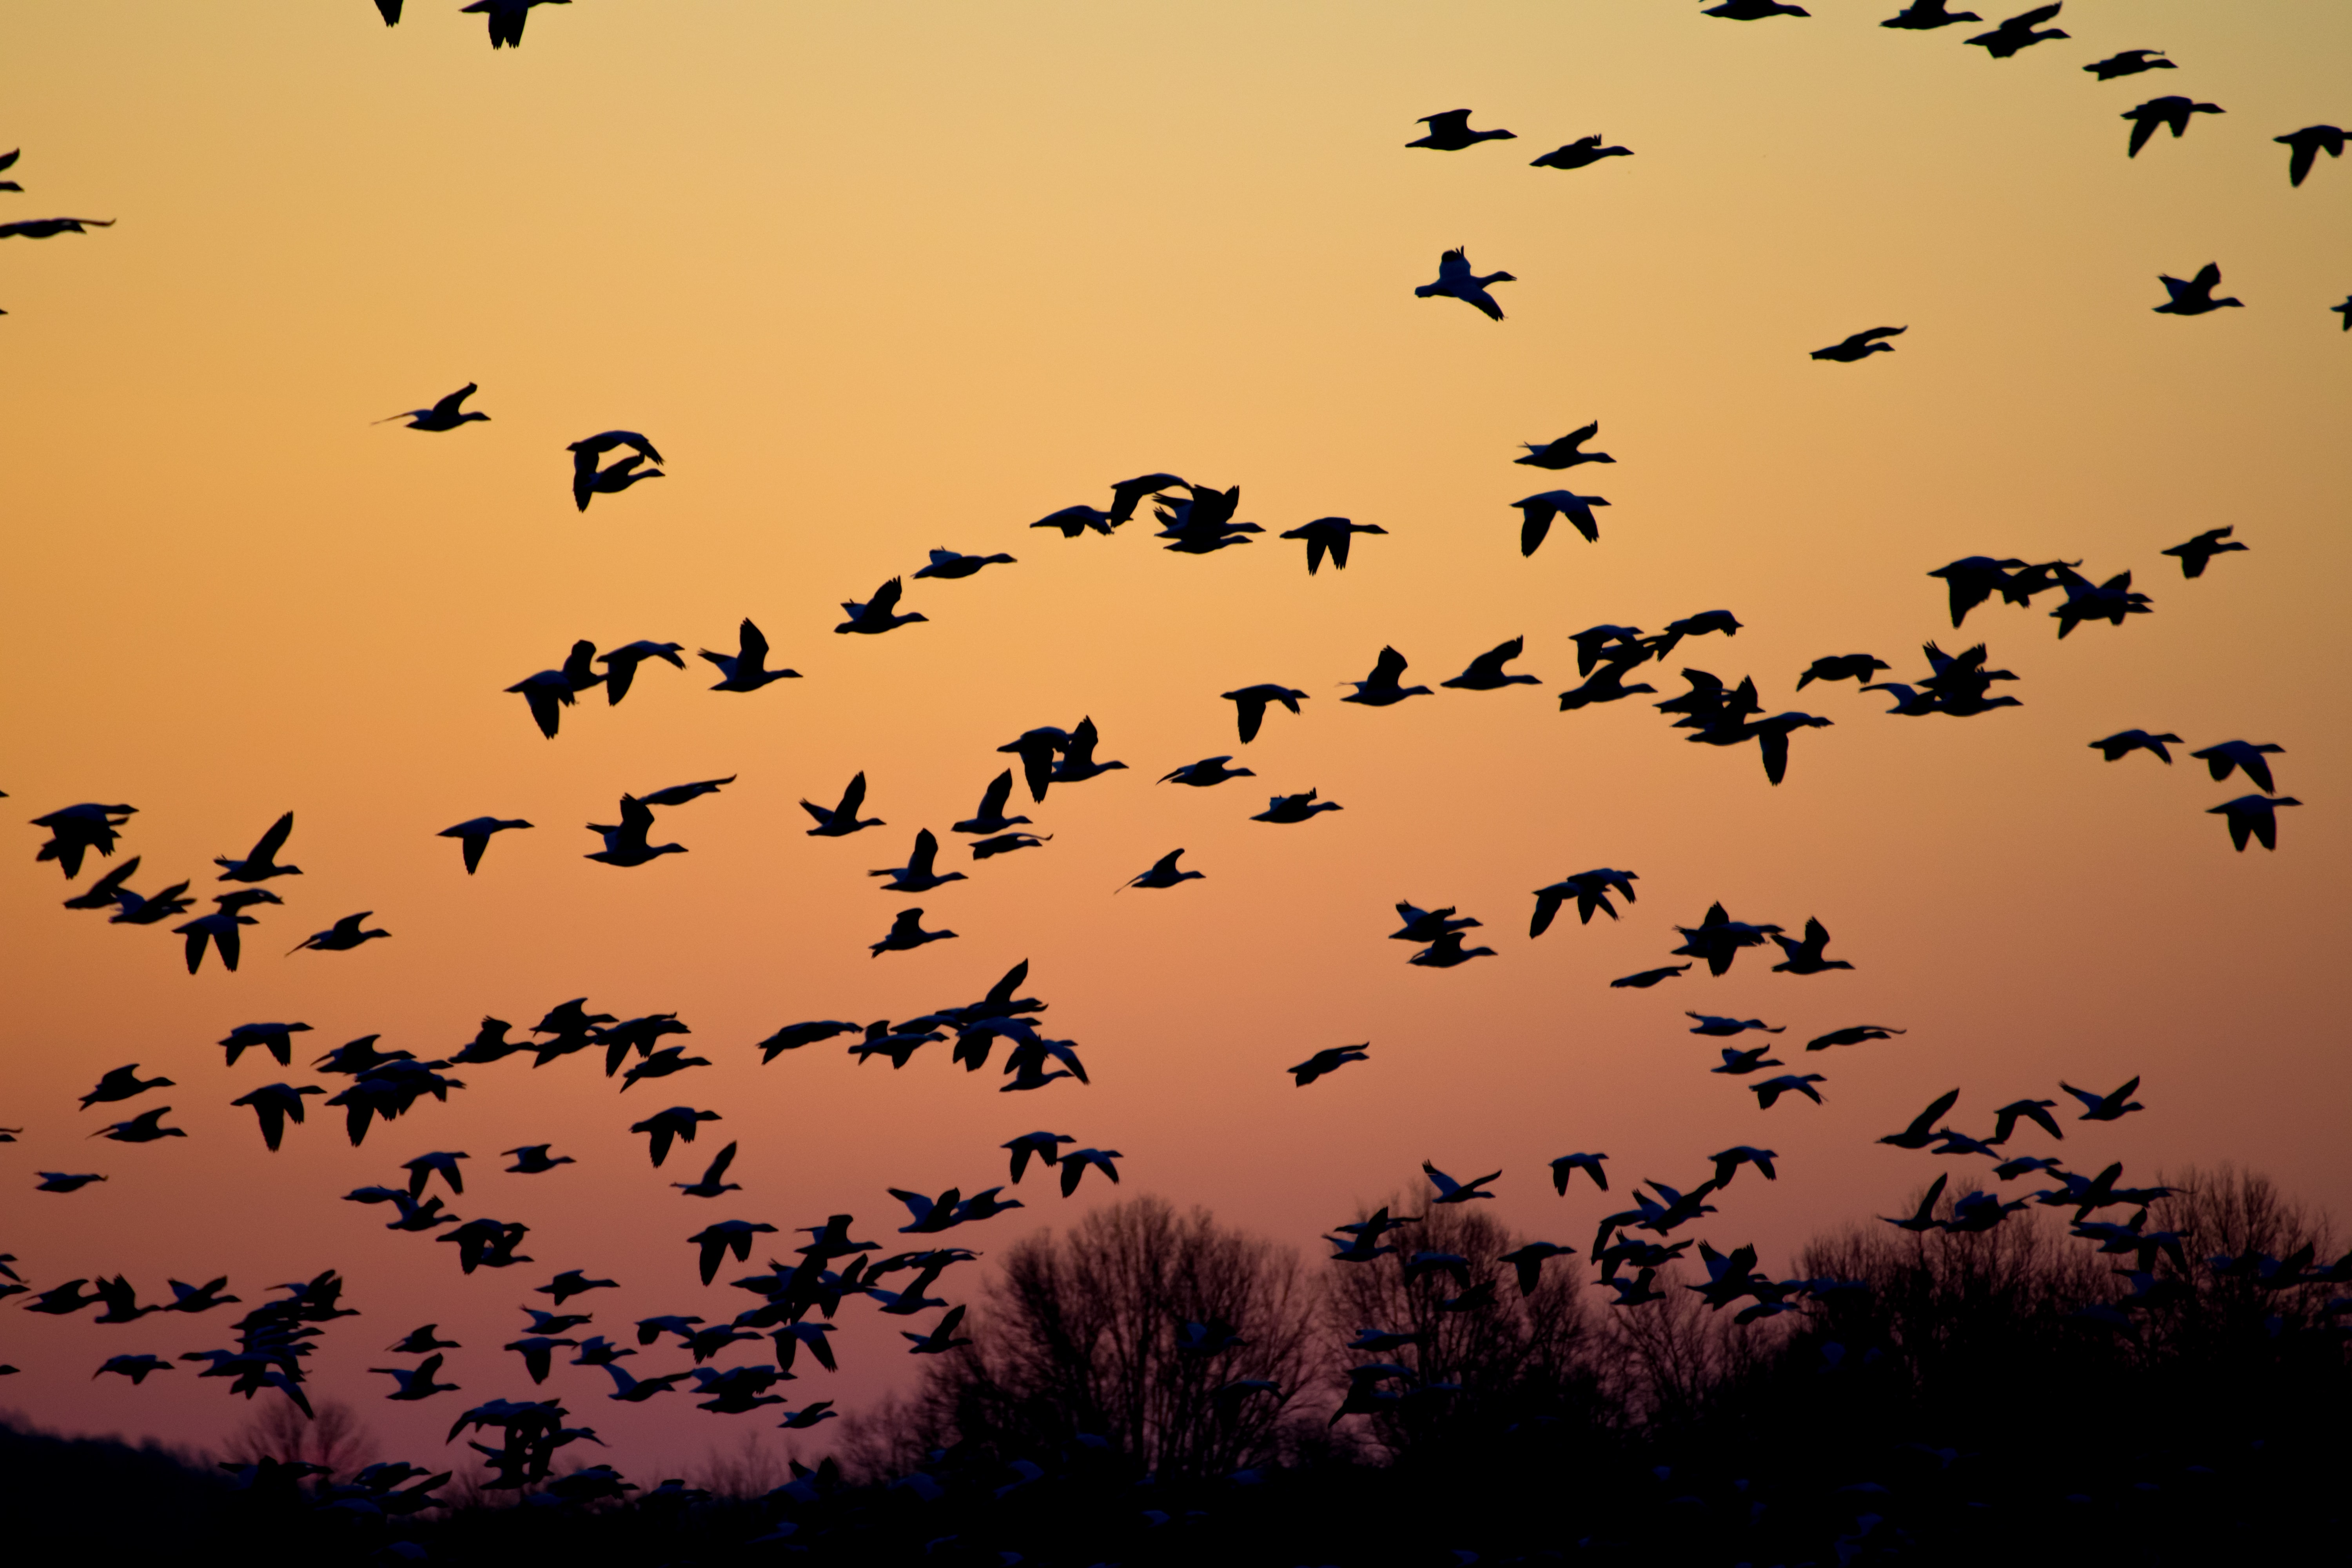 hubspot website migration like birds